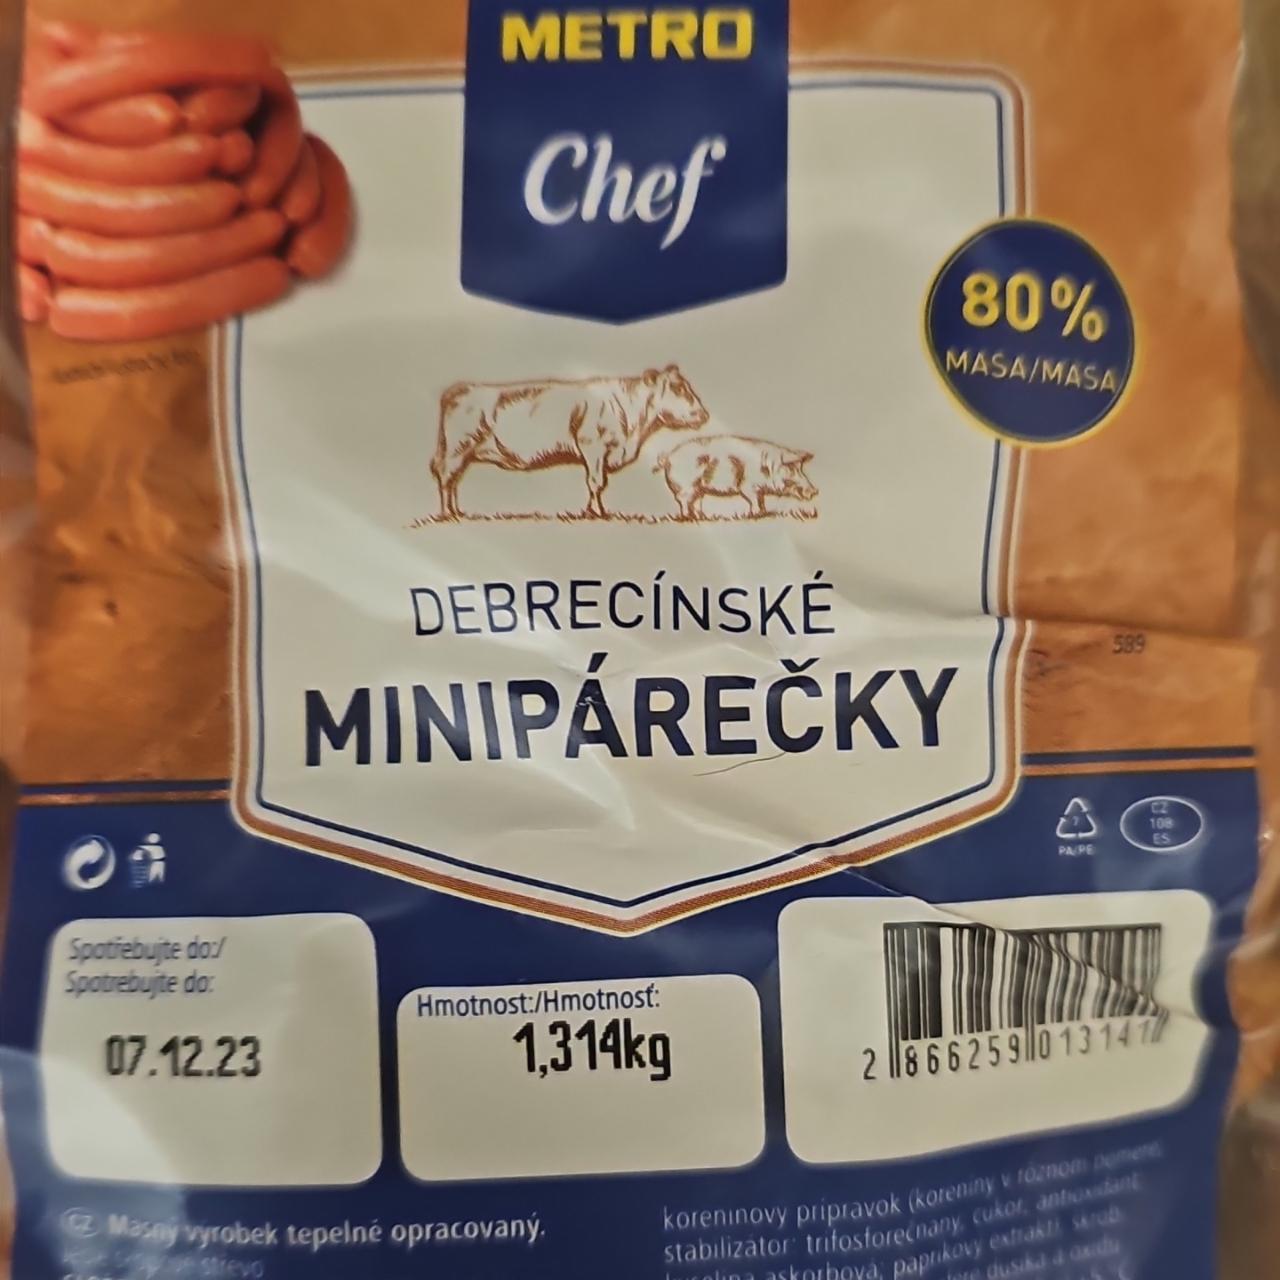 Fotografie - Debrecínské minipárečky Metro Chef